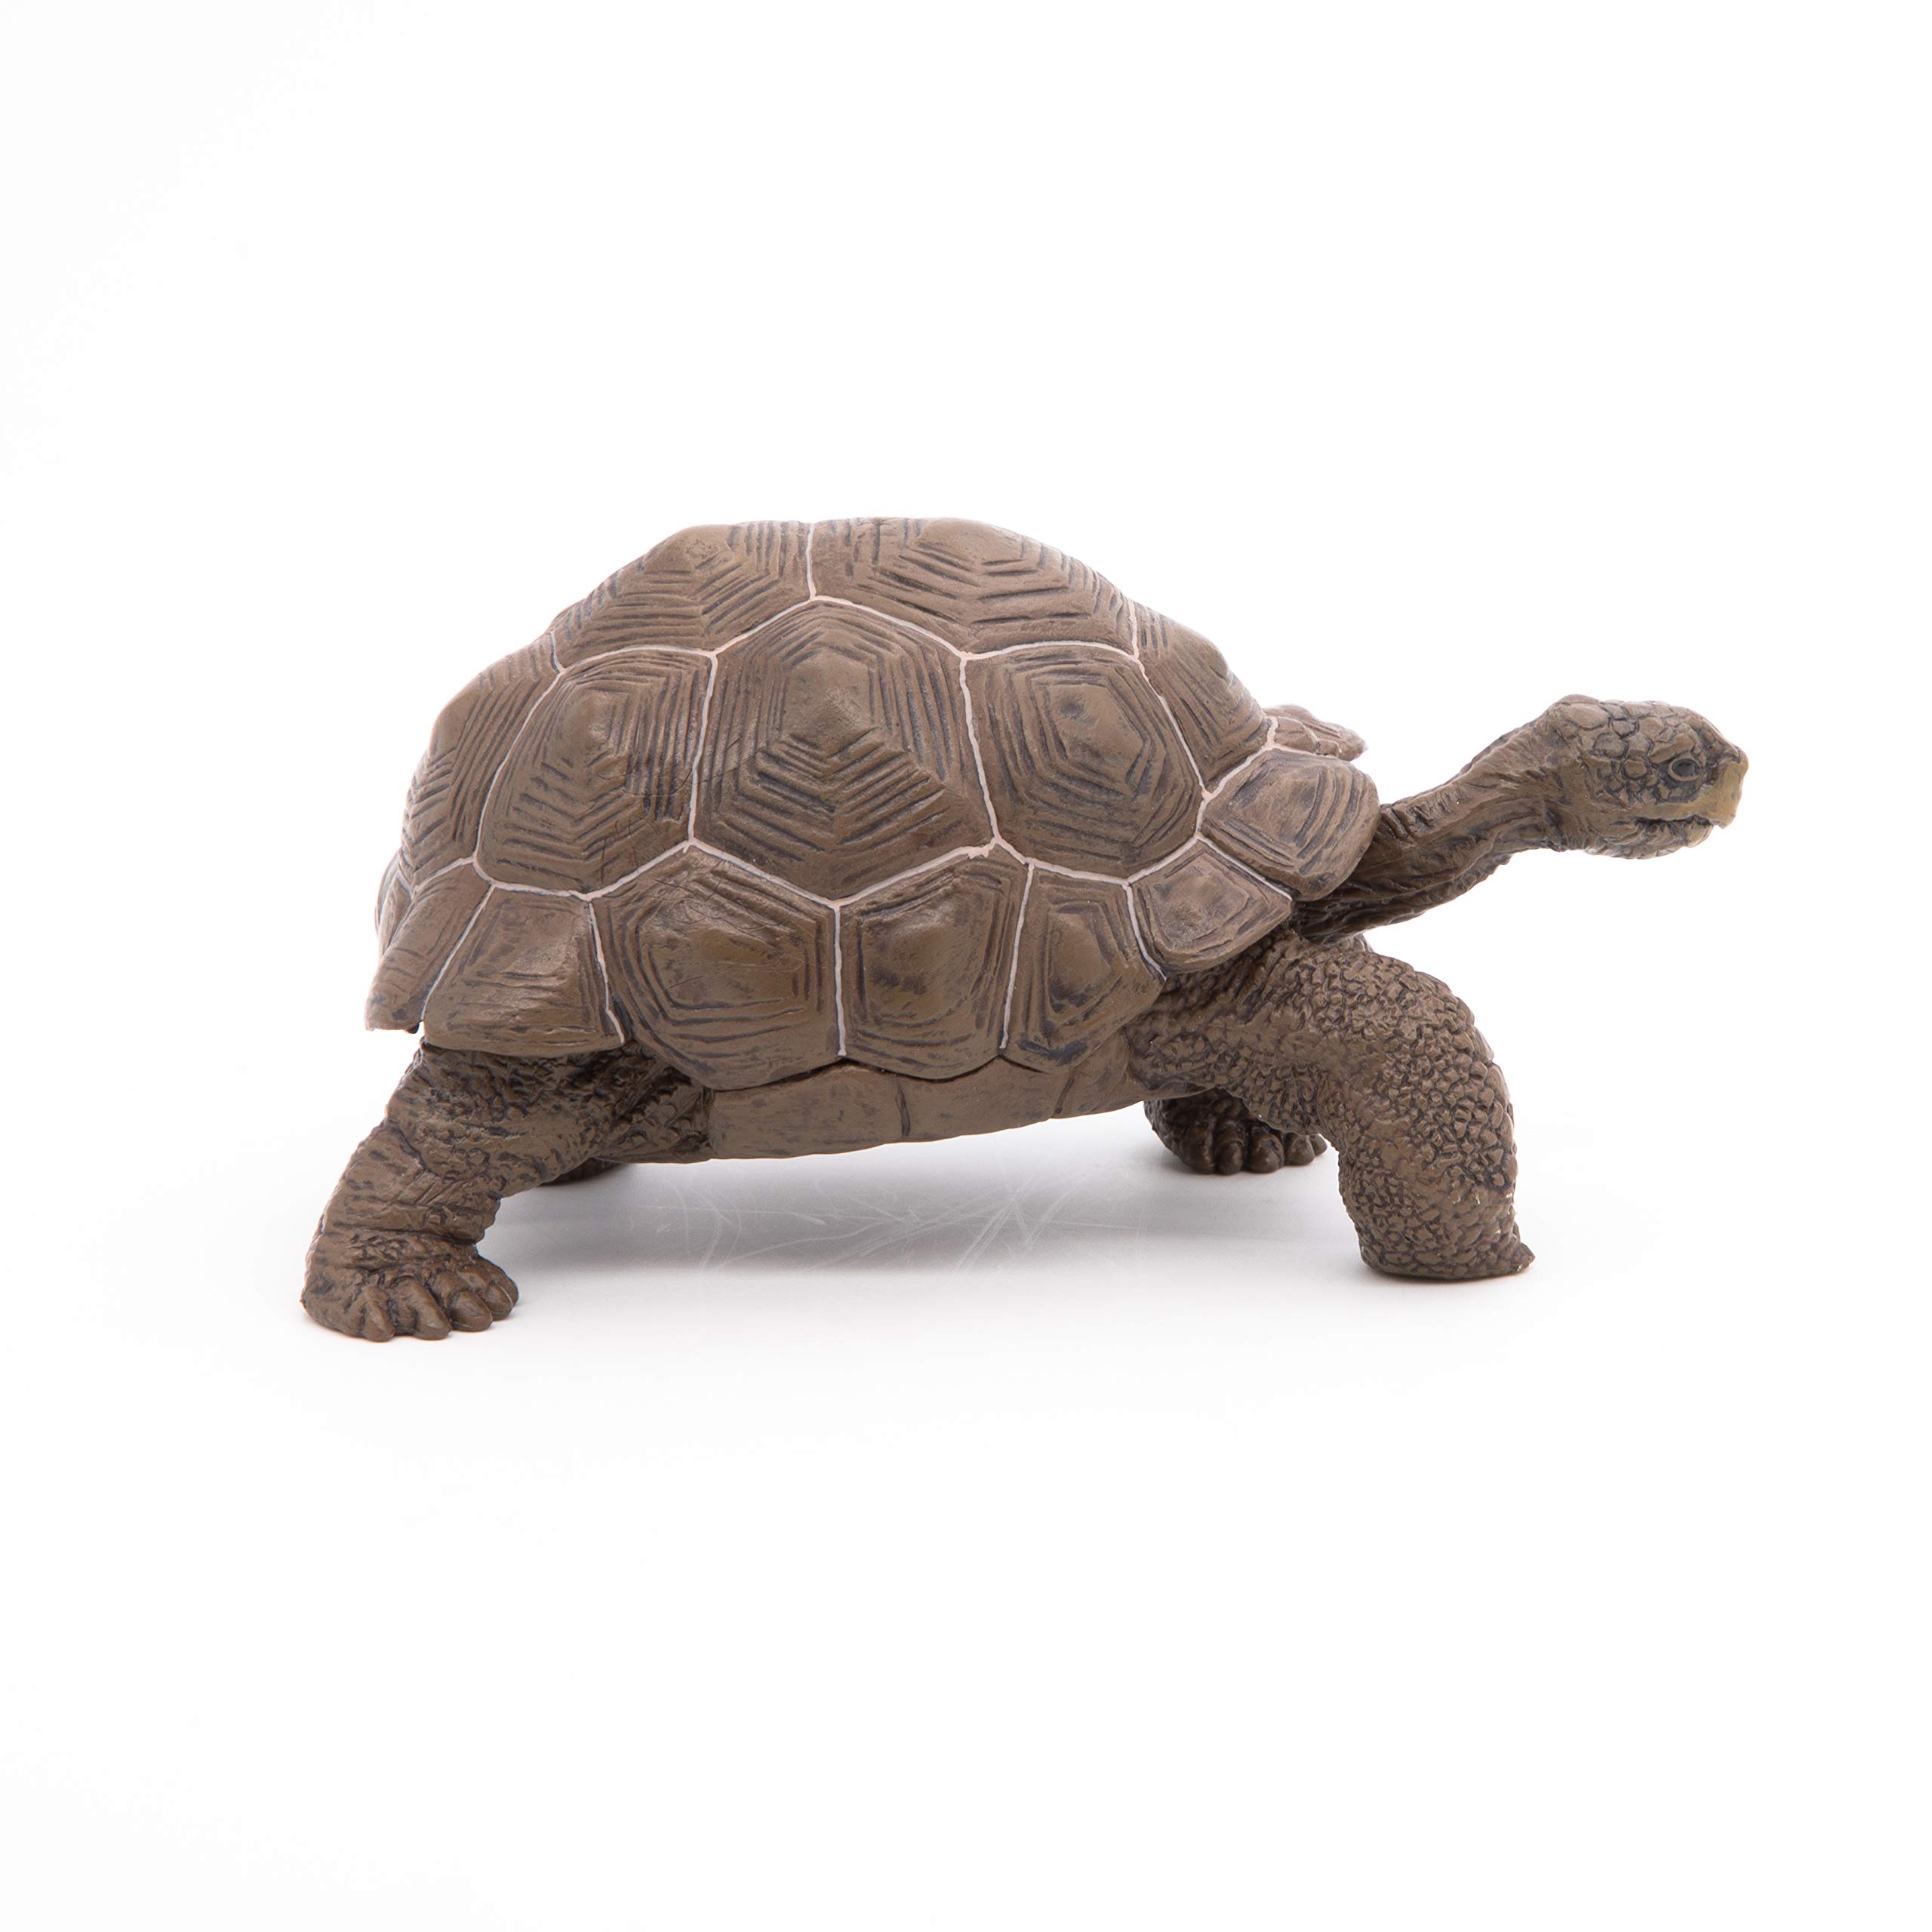 Papo Galapagos Tortoise Toy Figure